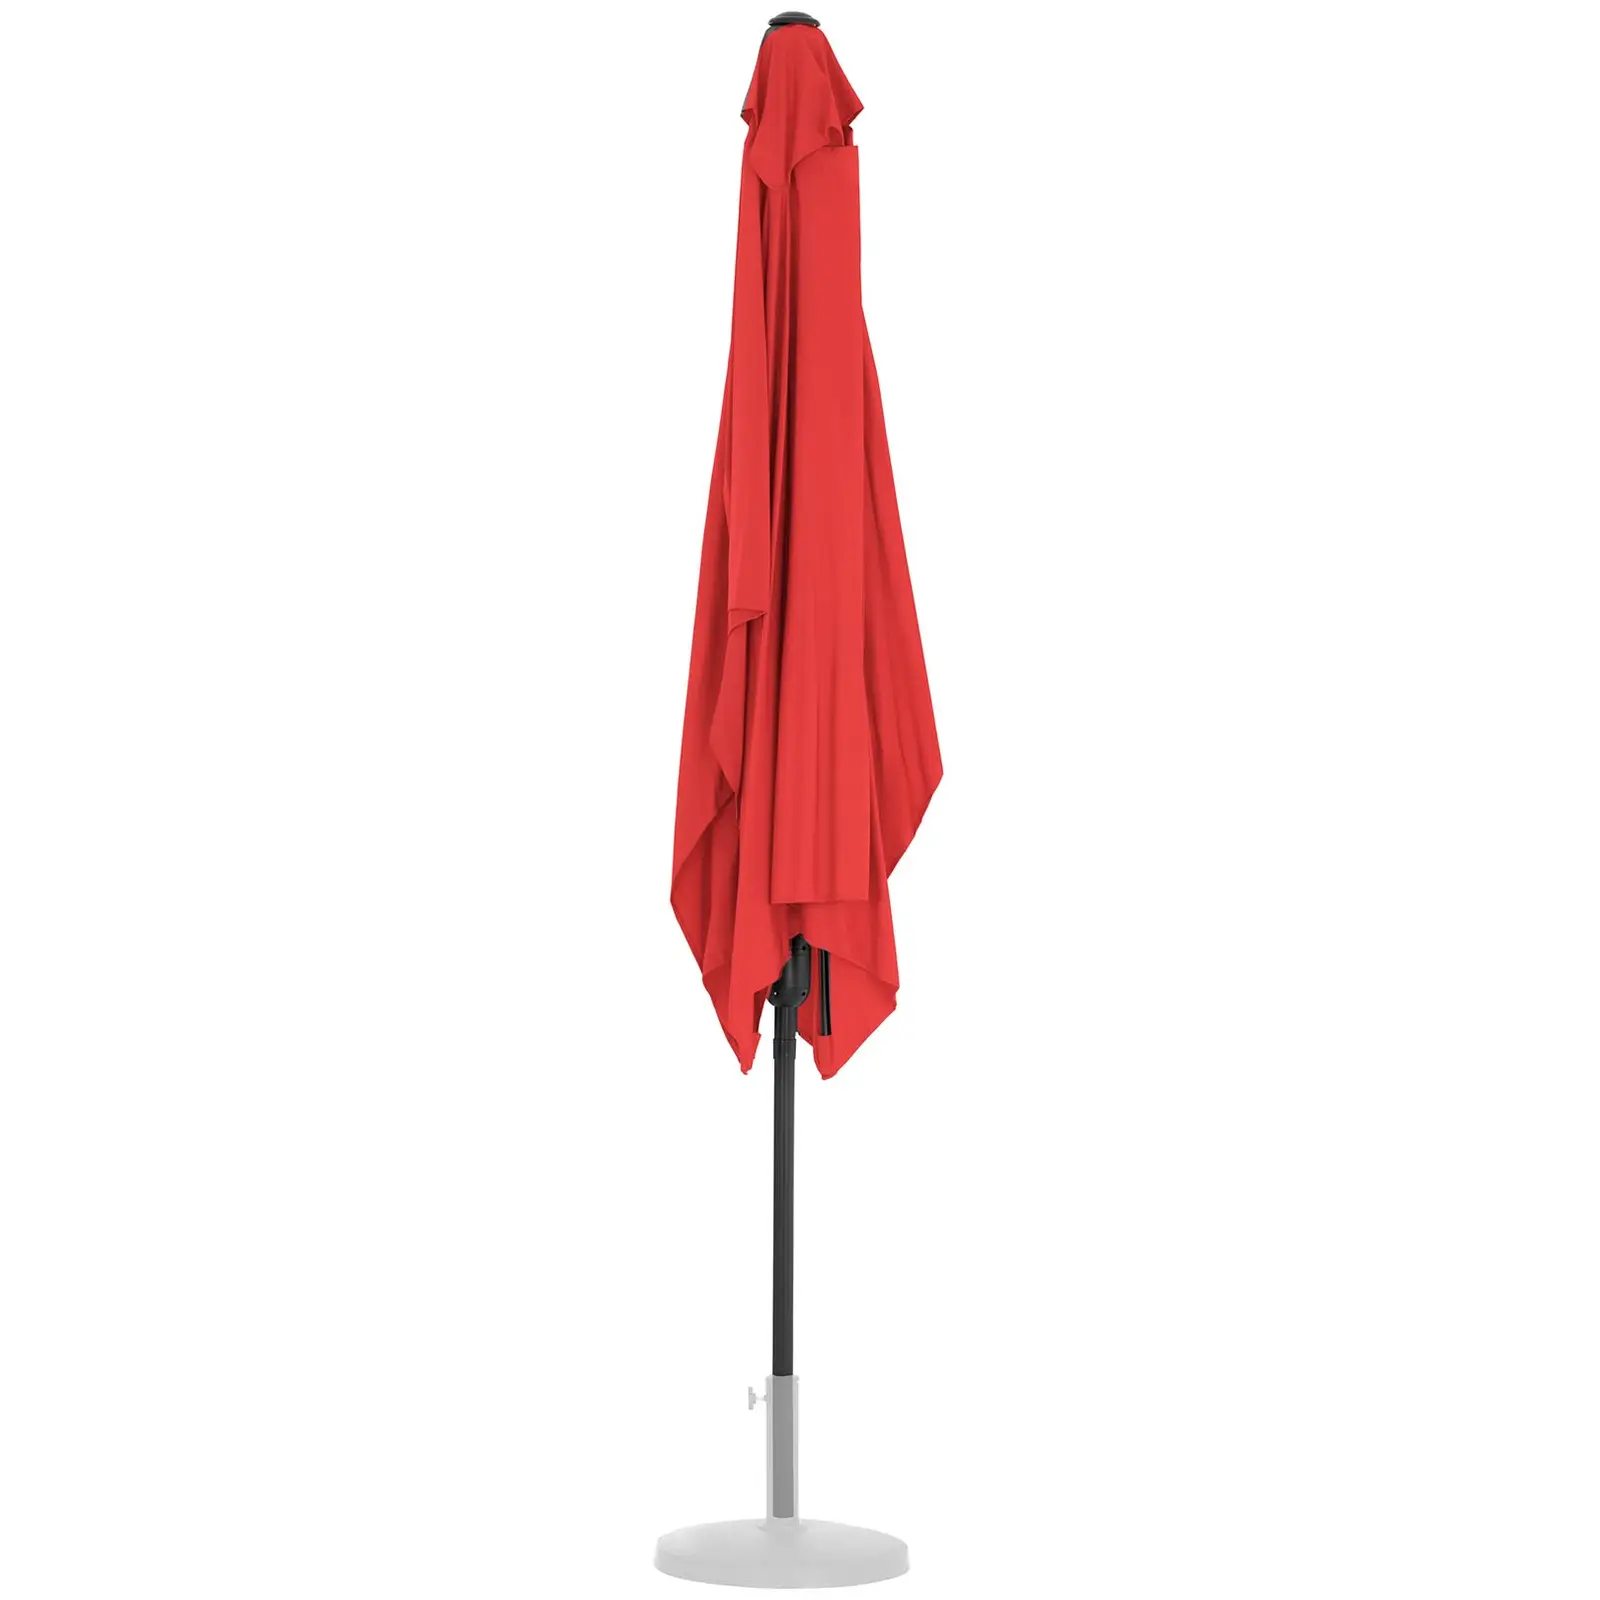 Andrahandssortering Parasoll - stort - rött - rektangulärt - 200 x 300 cm - lutningsbart